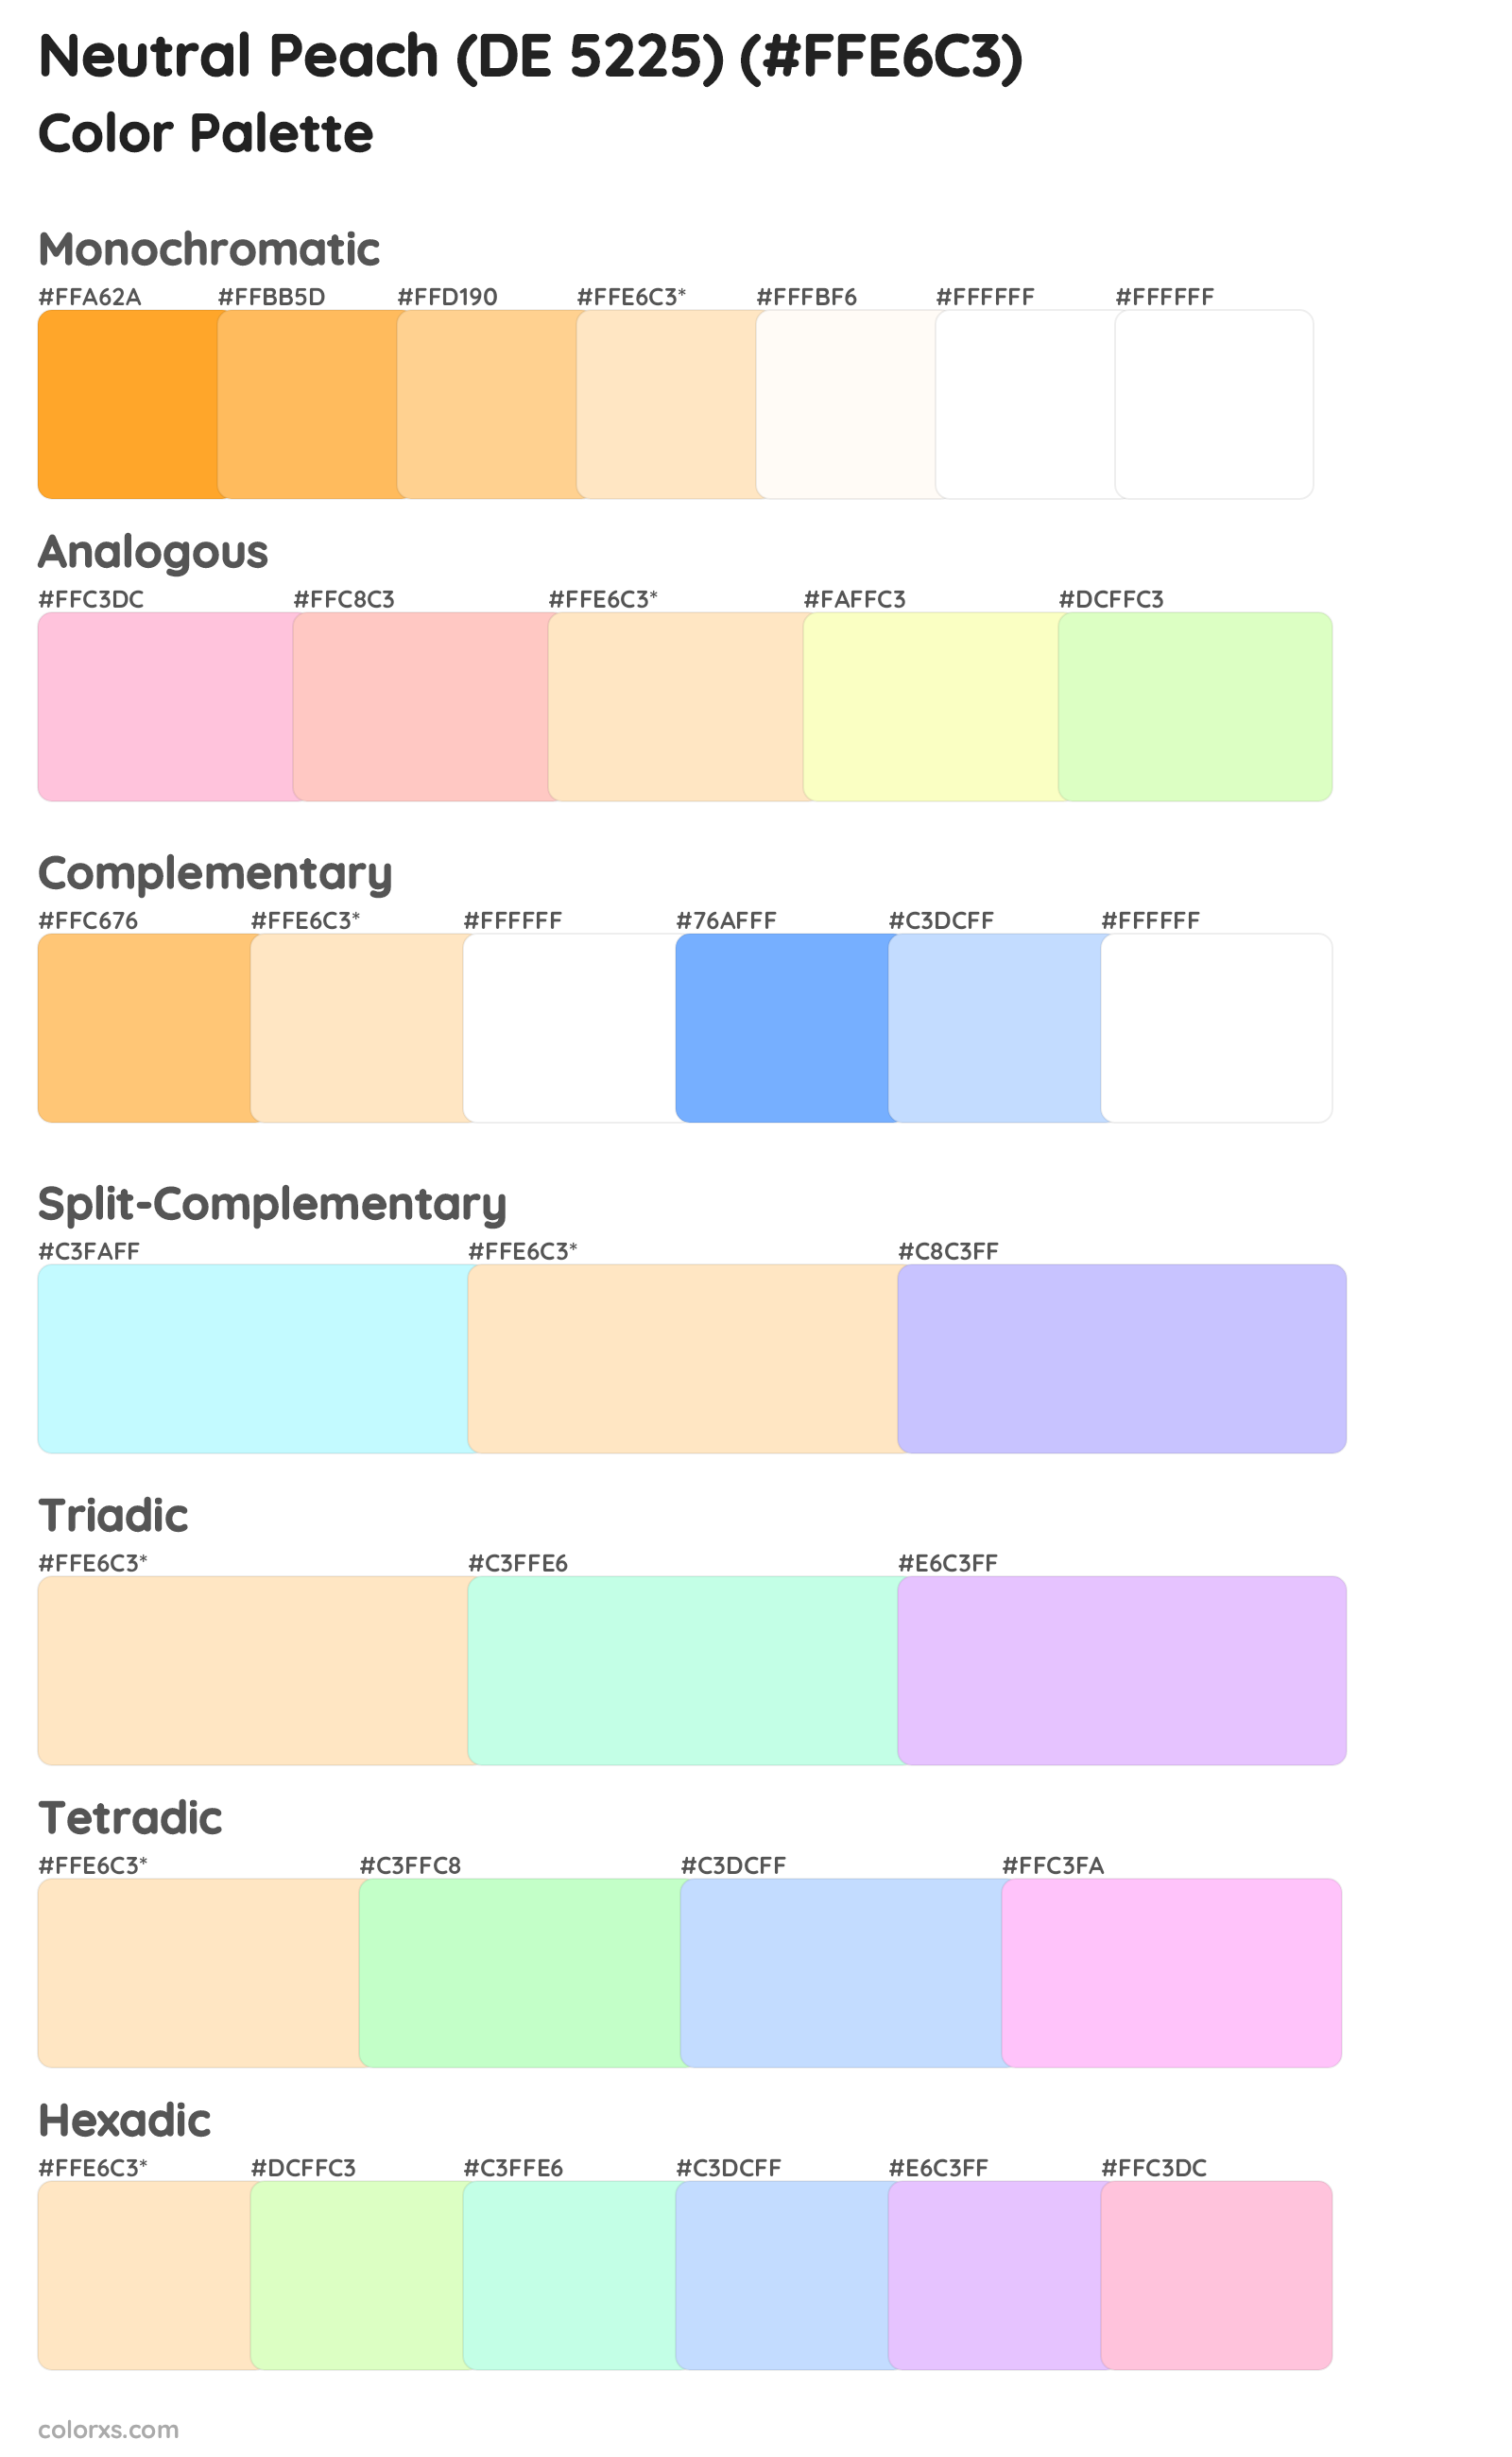 Neutral Peach (DE 5225) Color Scheme Palettes